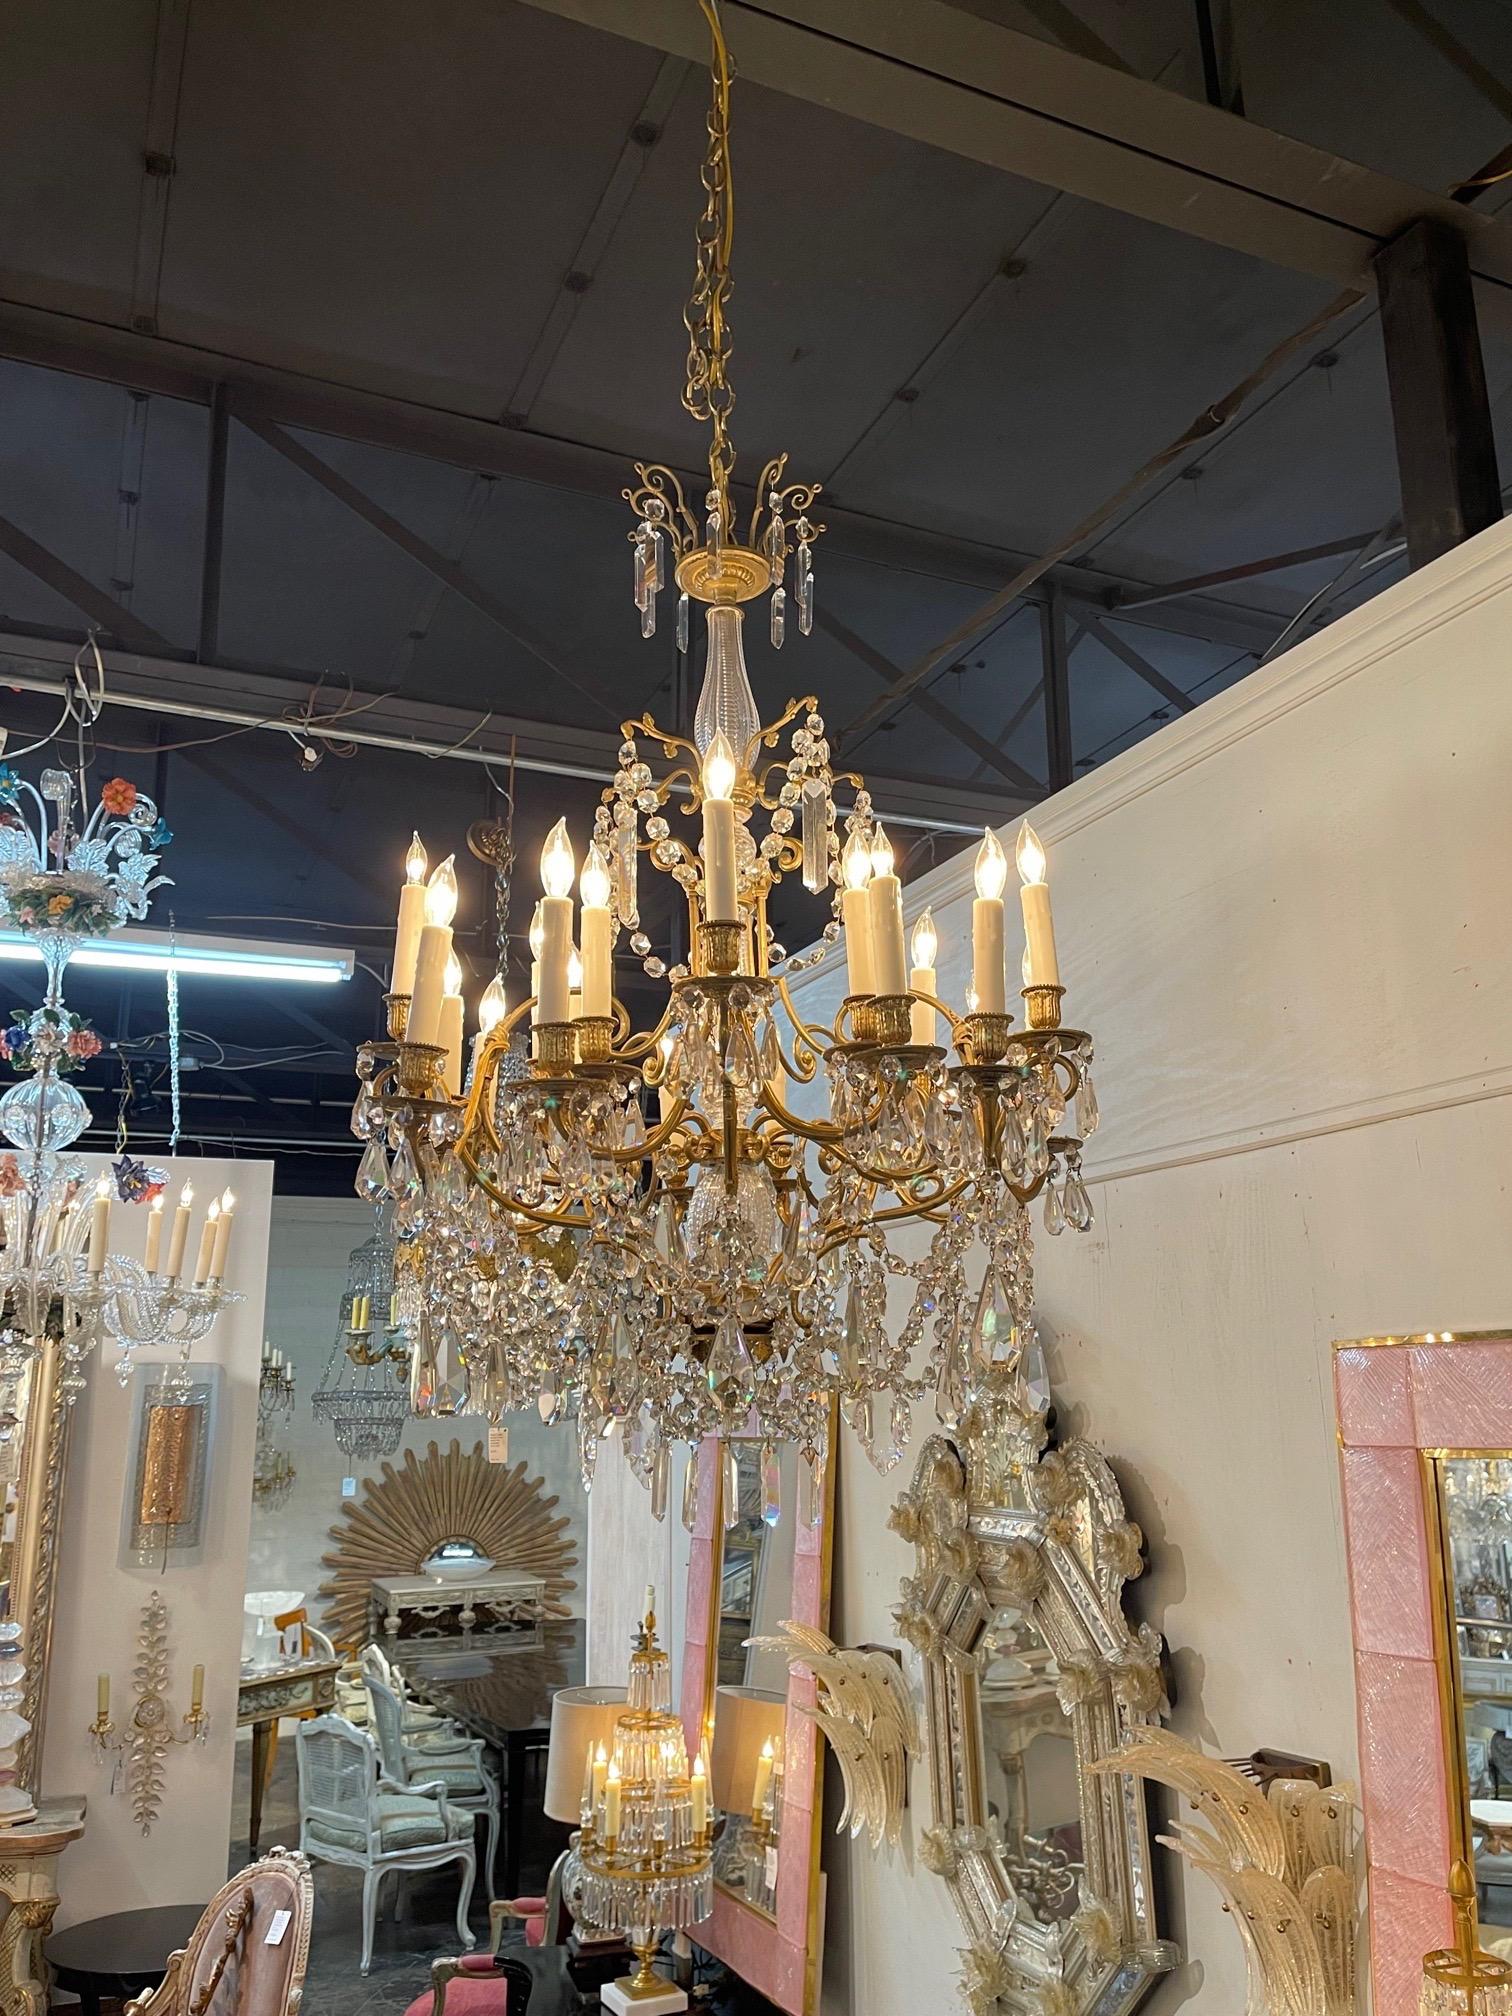 Exquis lustre français du 19ème siècle en bronze doré et cristal de 20 lumières. Avec de magnifiques cristaux et une belle base décorative. Une fixation exceptionnelle !